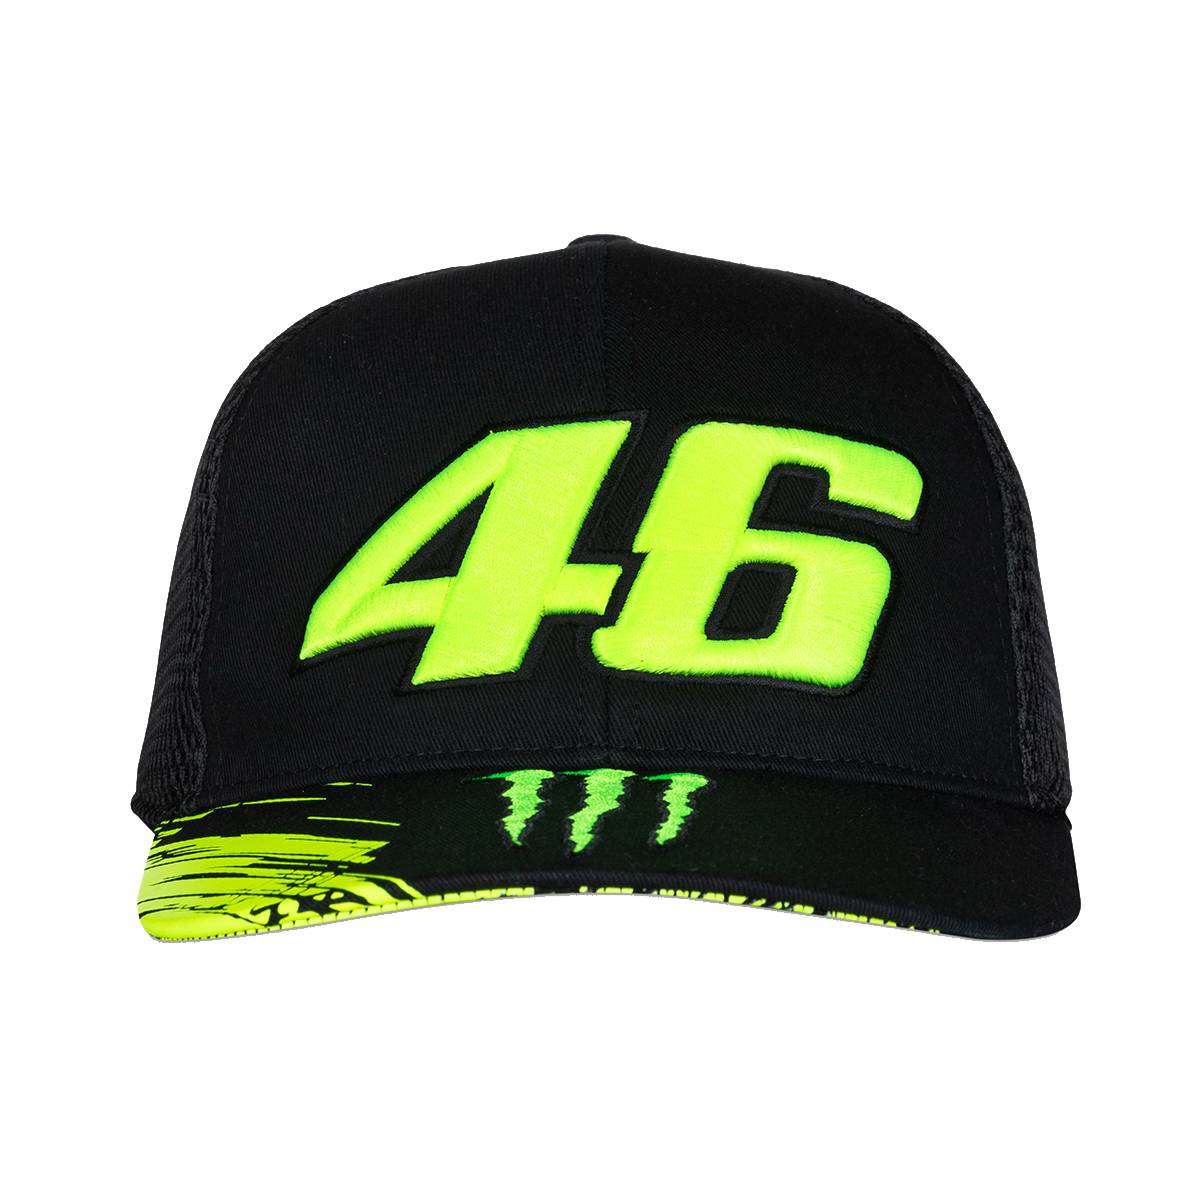 Valentino Rossi Monster Energy Trucker Cap "46" - schwarz